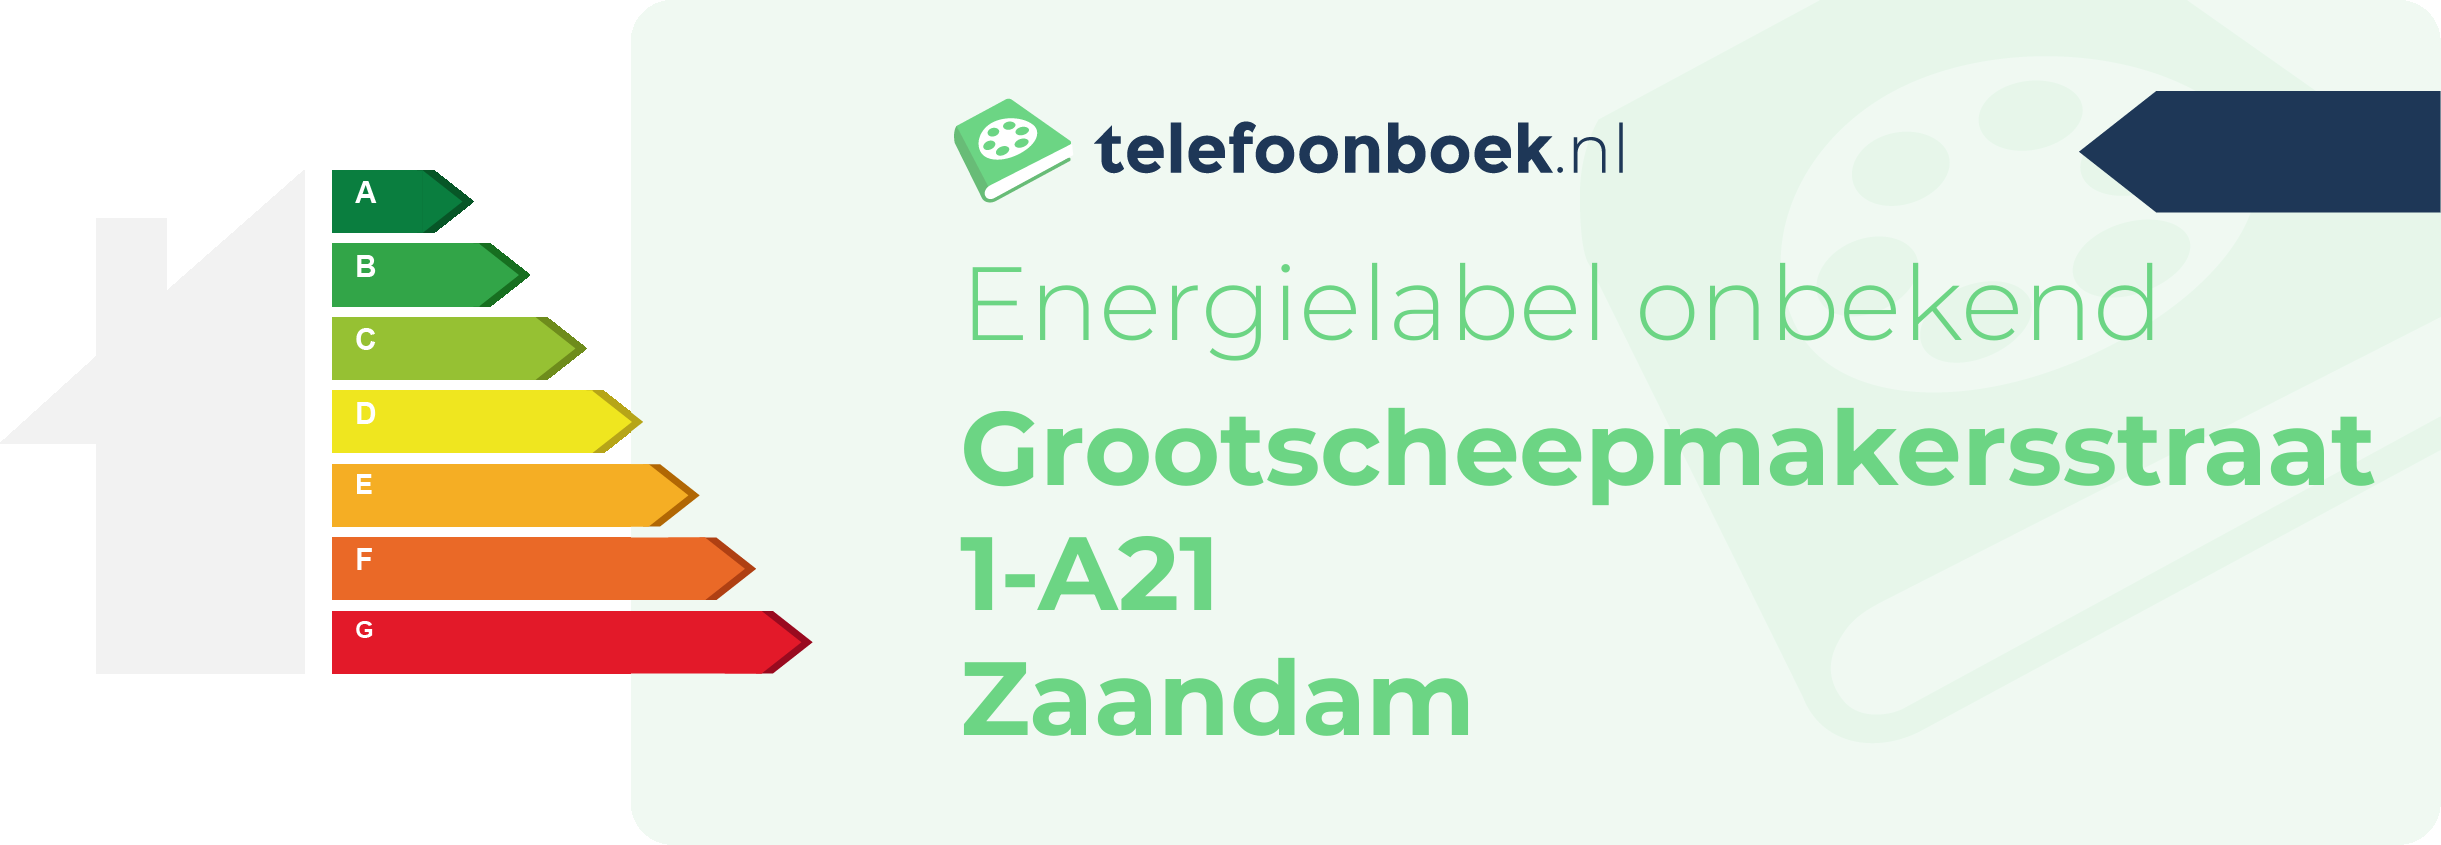 Energielabel Grootscheepmakersstraat 1-A21 Zaandam